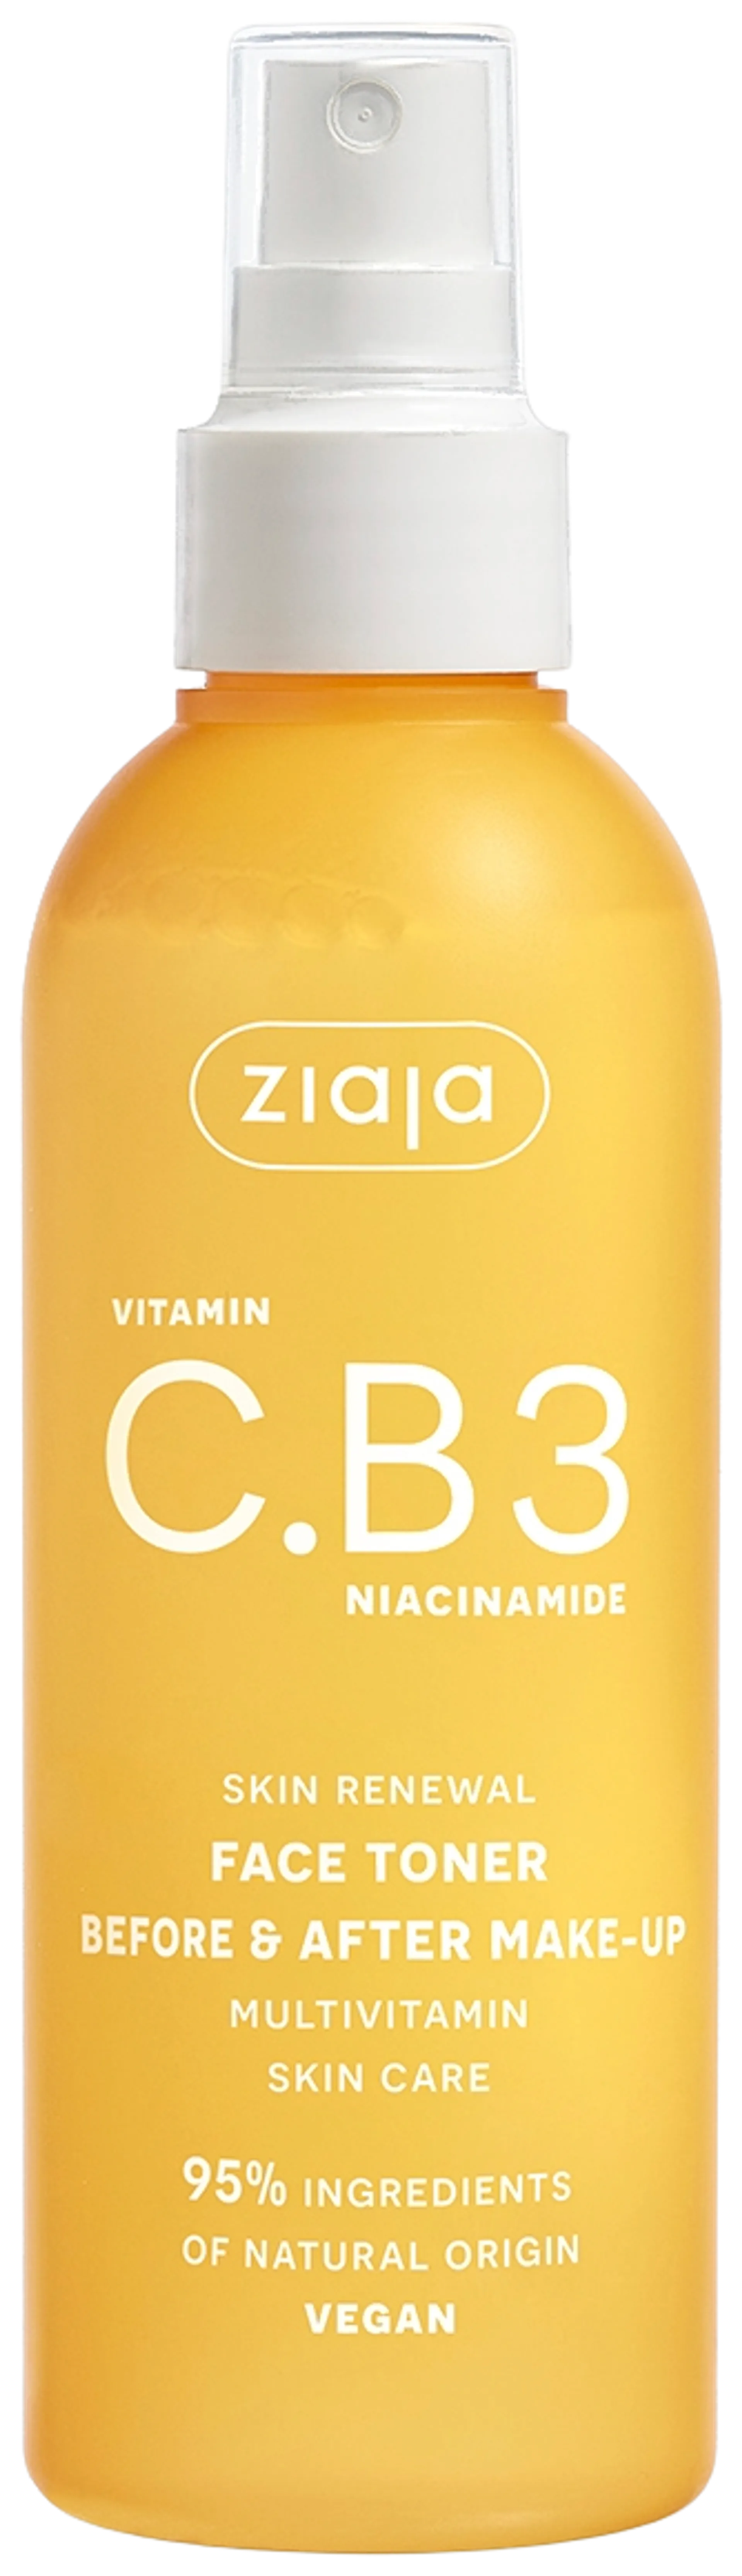 Ziaja C.B3 vitamiini kasvosuihke 190 ml - 1